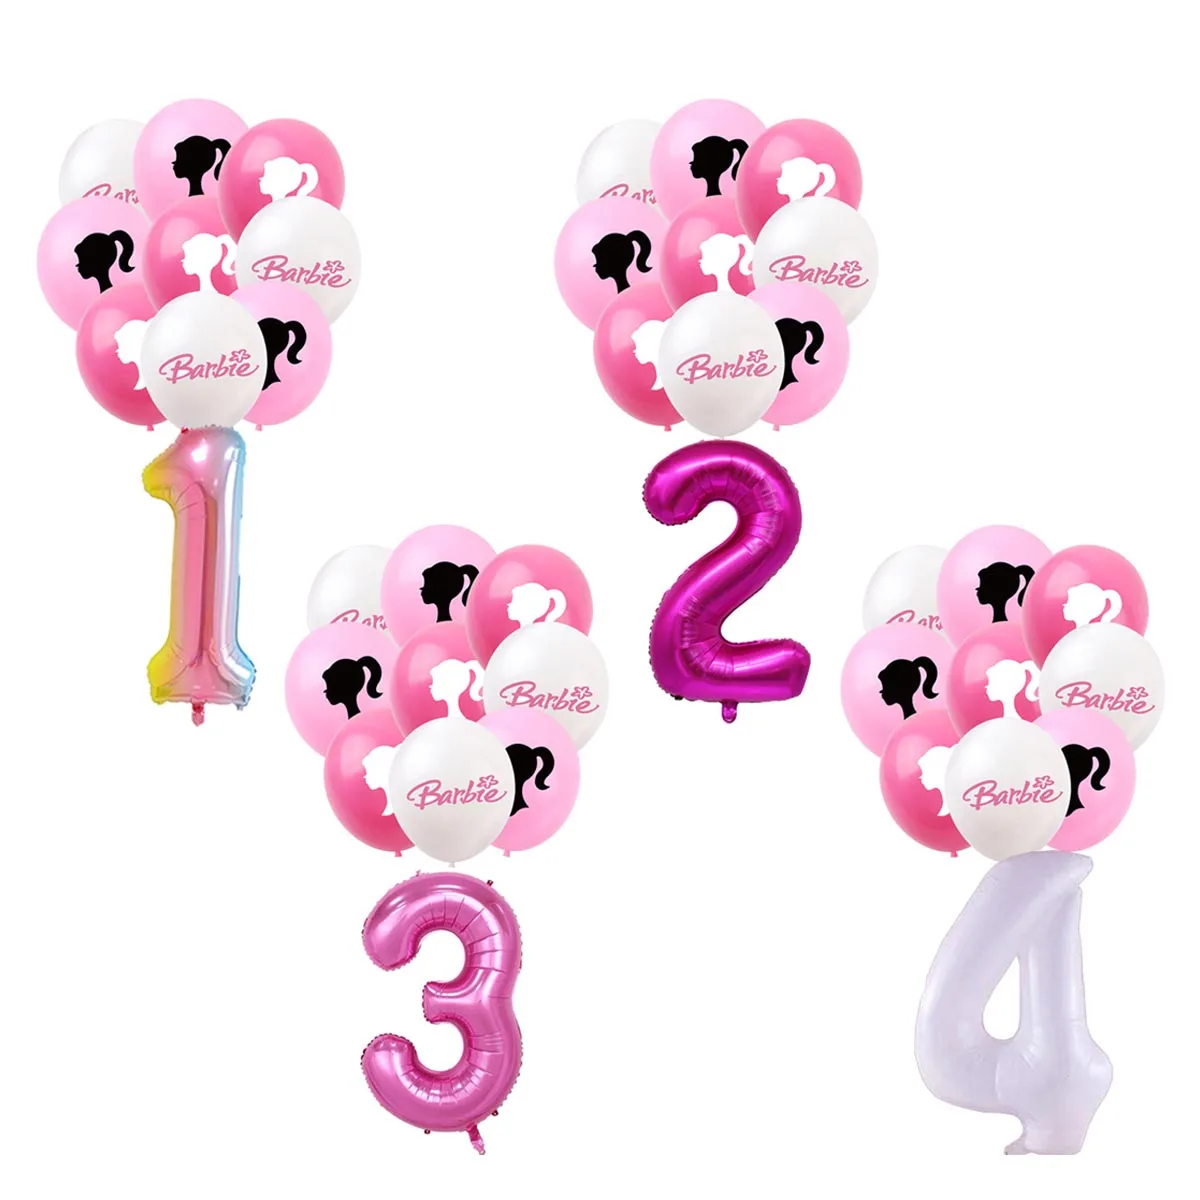 13 Adet Karikatür Sürpriz Barbie Prenses Bebek Tema Folyo Balonlar Pembe Kız Doğum Günü Numarası 1-9 Helyum Parti Dekorasyon Topu Oyuncaklar